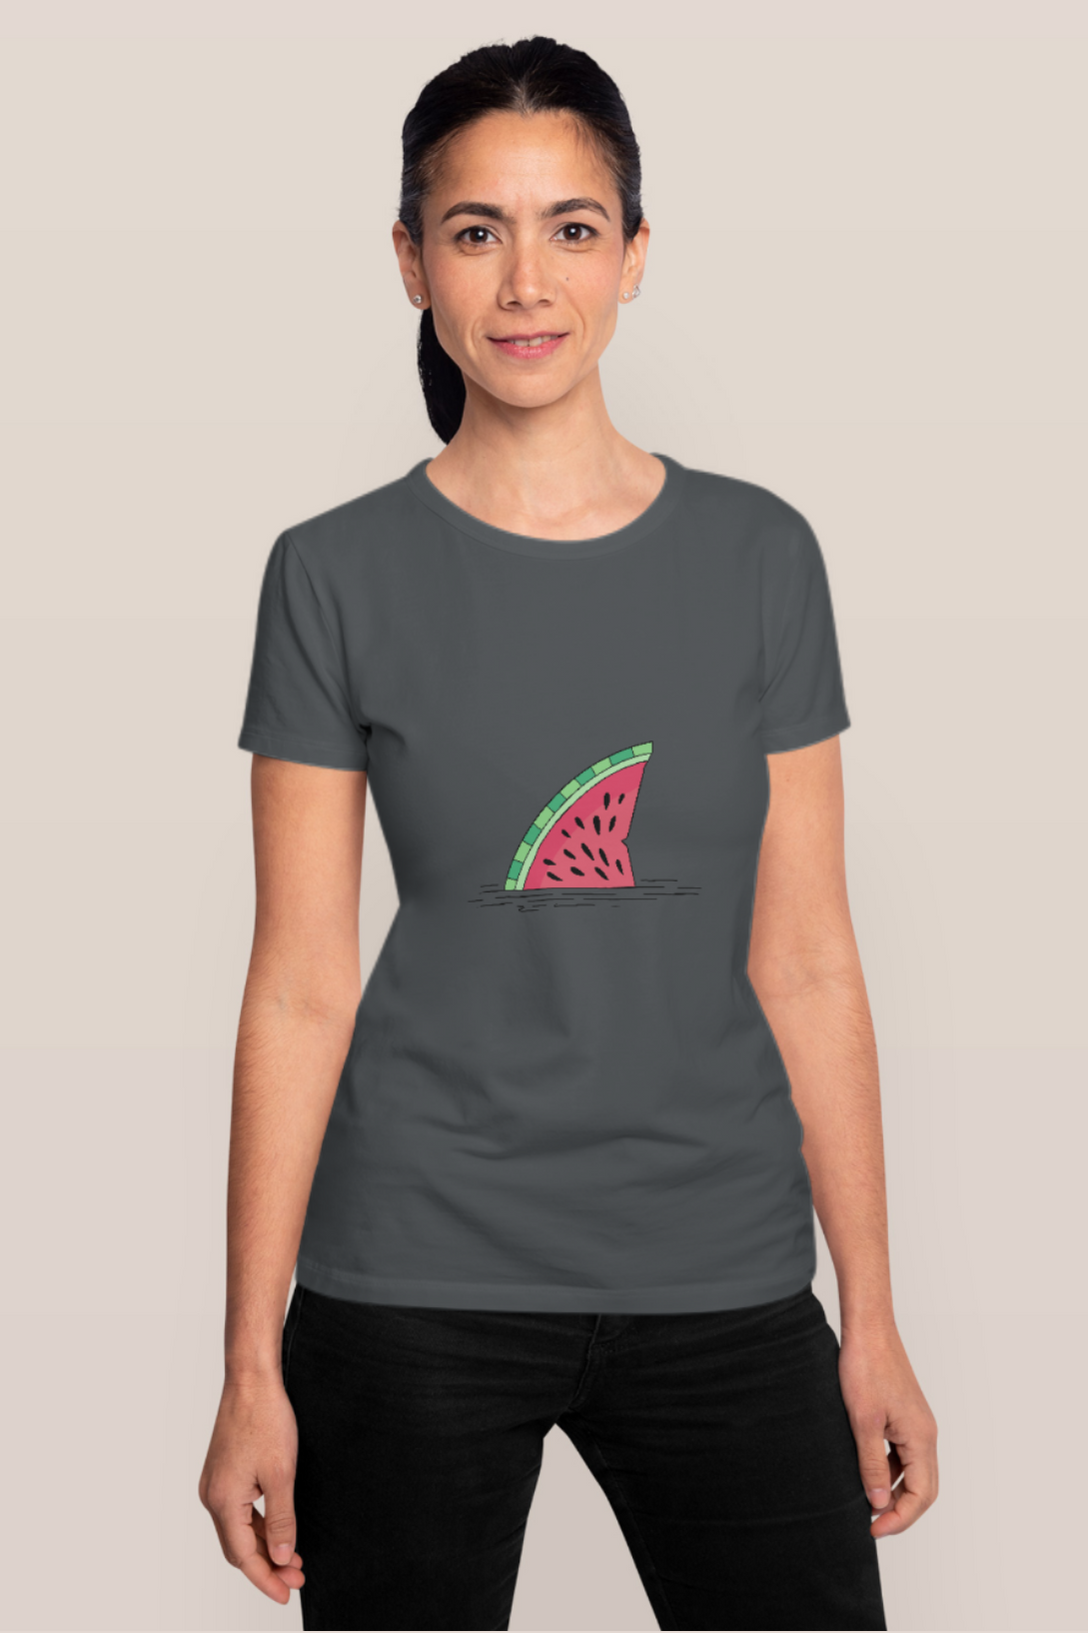 Watermelon Shark Fin Printed T-Shirt For Women - WowWaves - 10